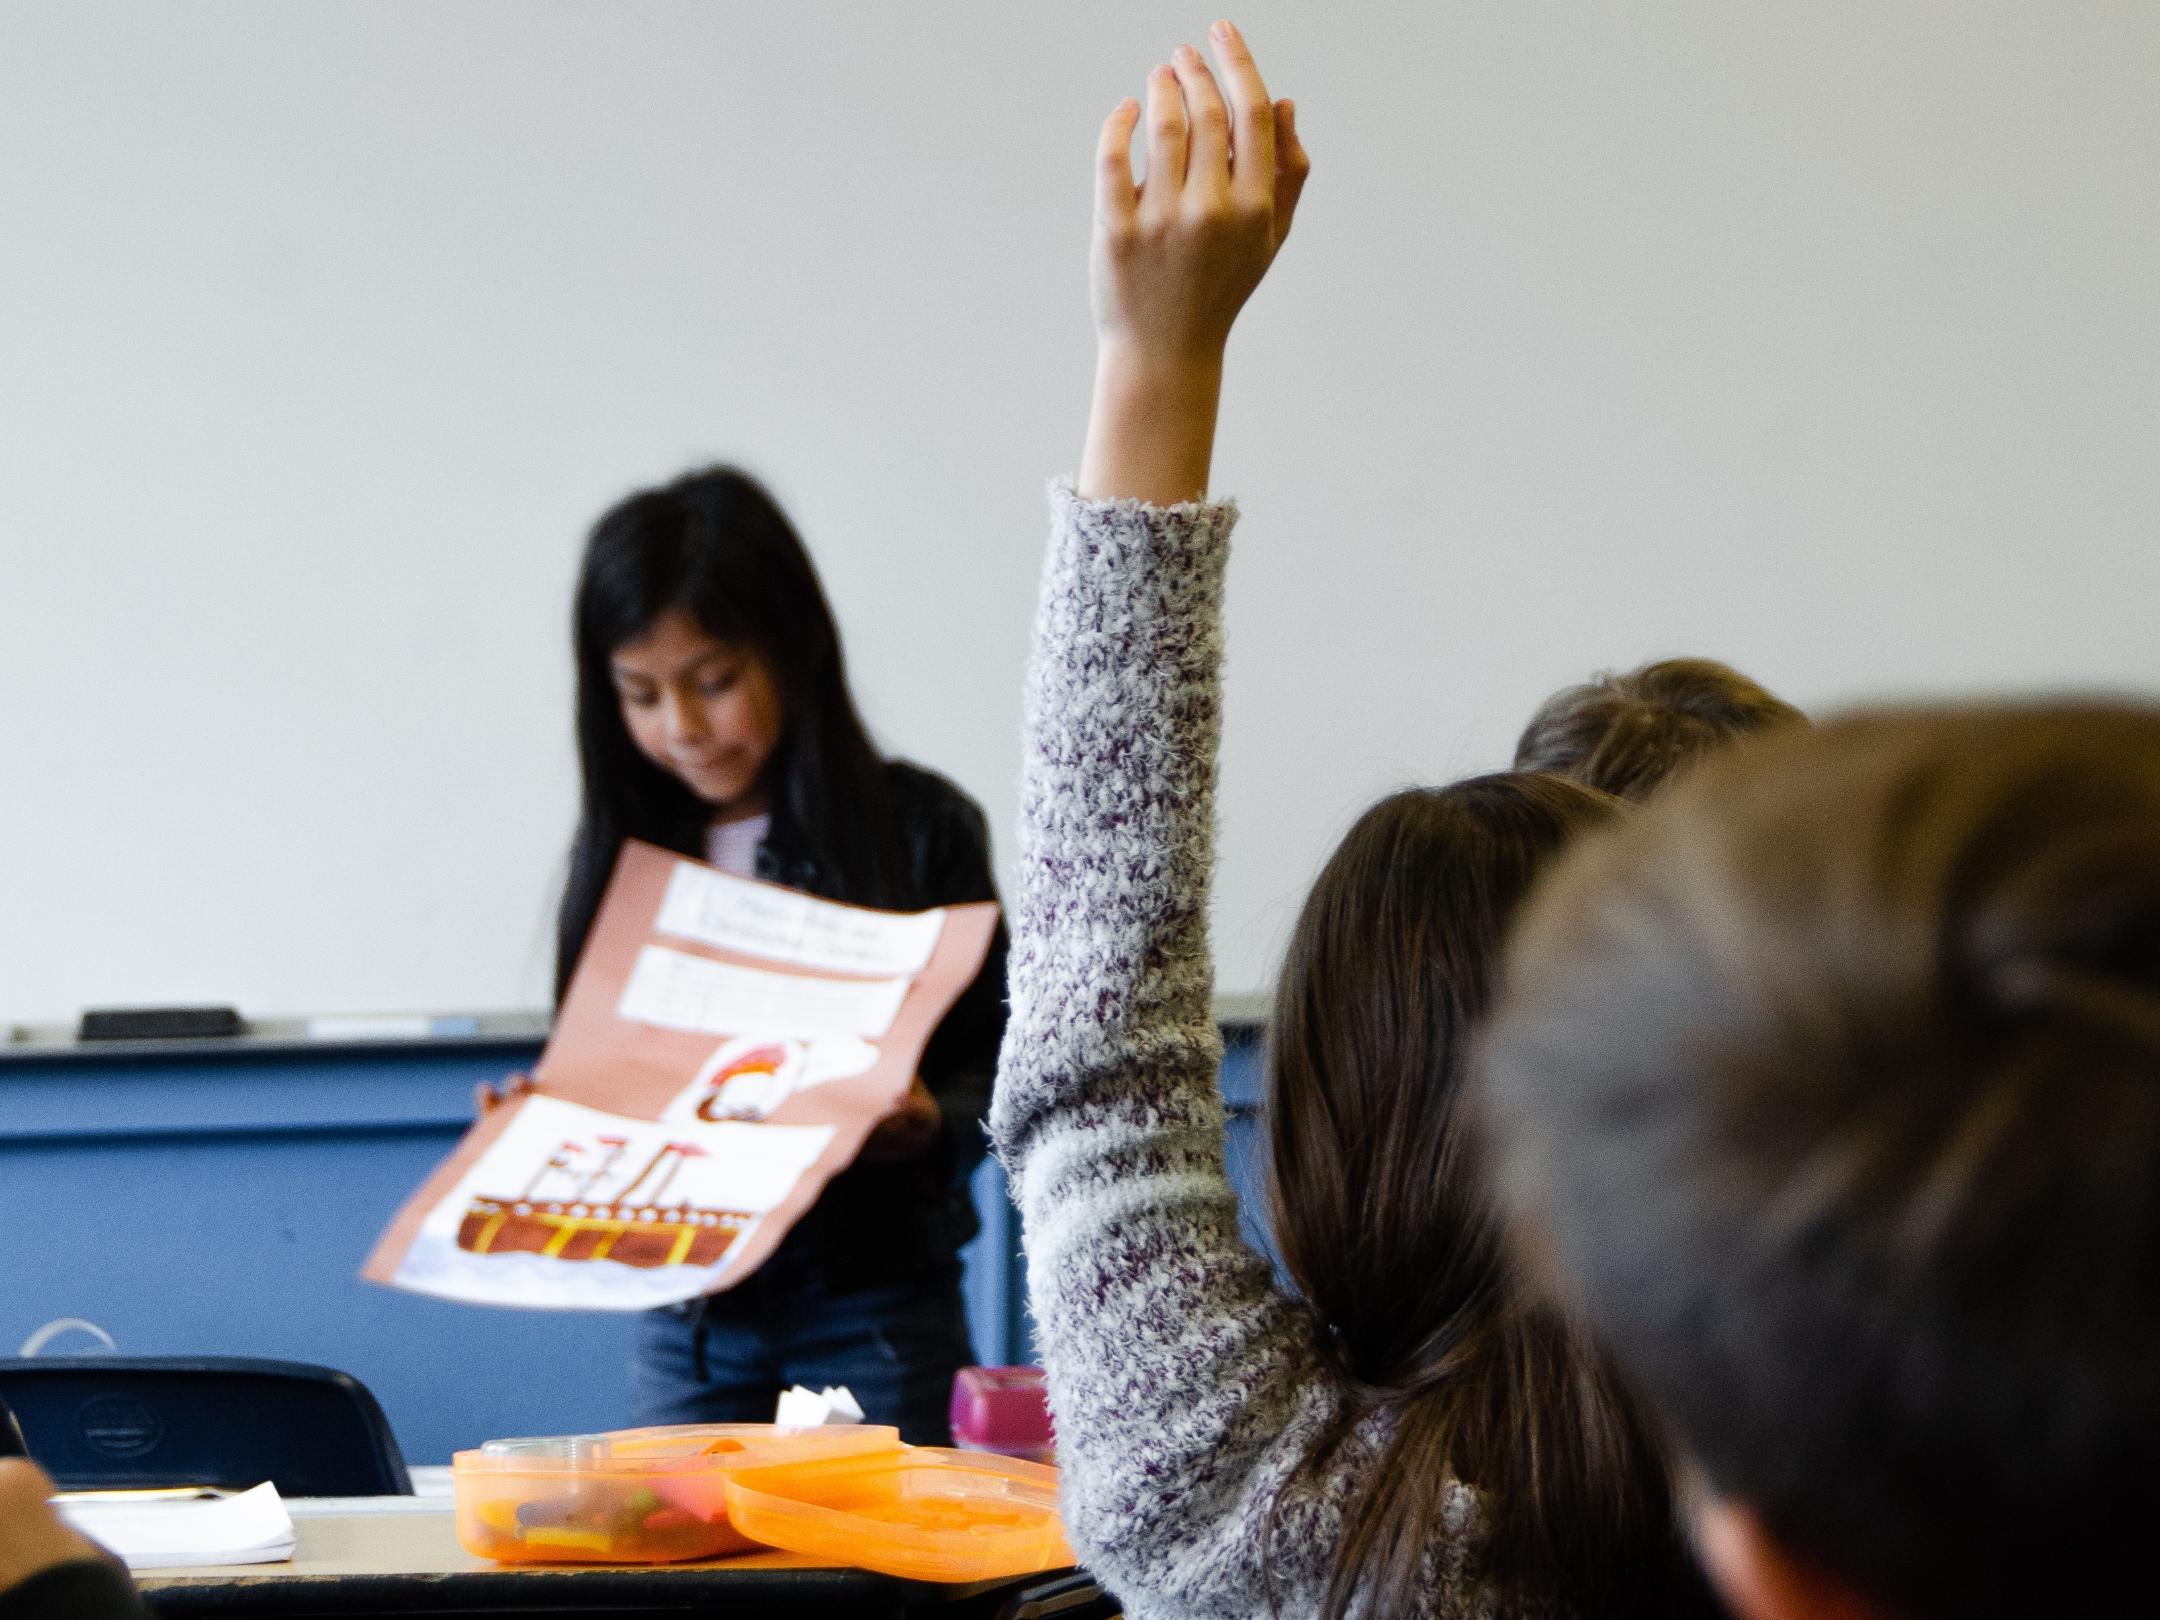 Man sieht einen Ausschnitt aus einem Klassenraum mit Schülern von hinten, von denen sich eine Schülerin meldet. Vorne steht ein Mädchen, das ein Plakat in den Händen hält.